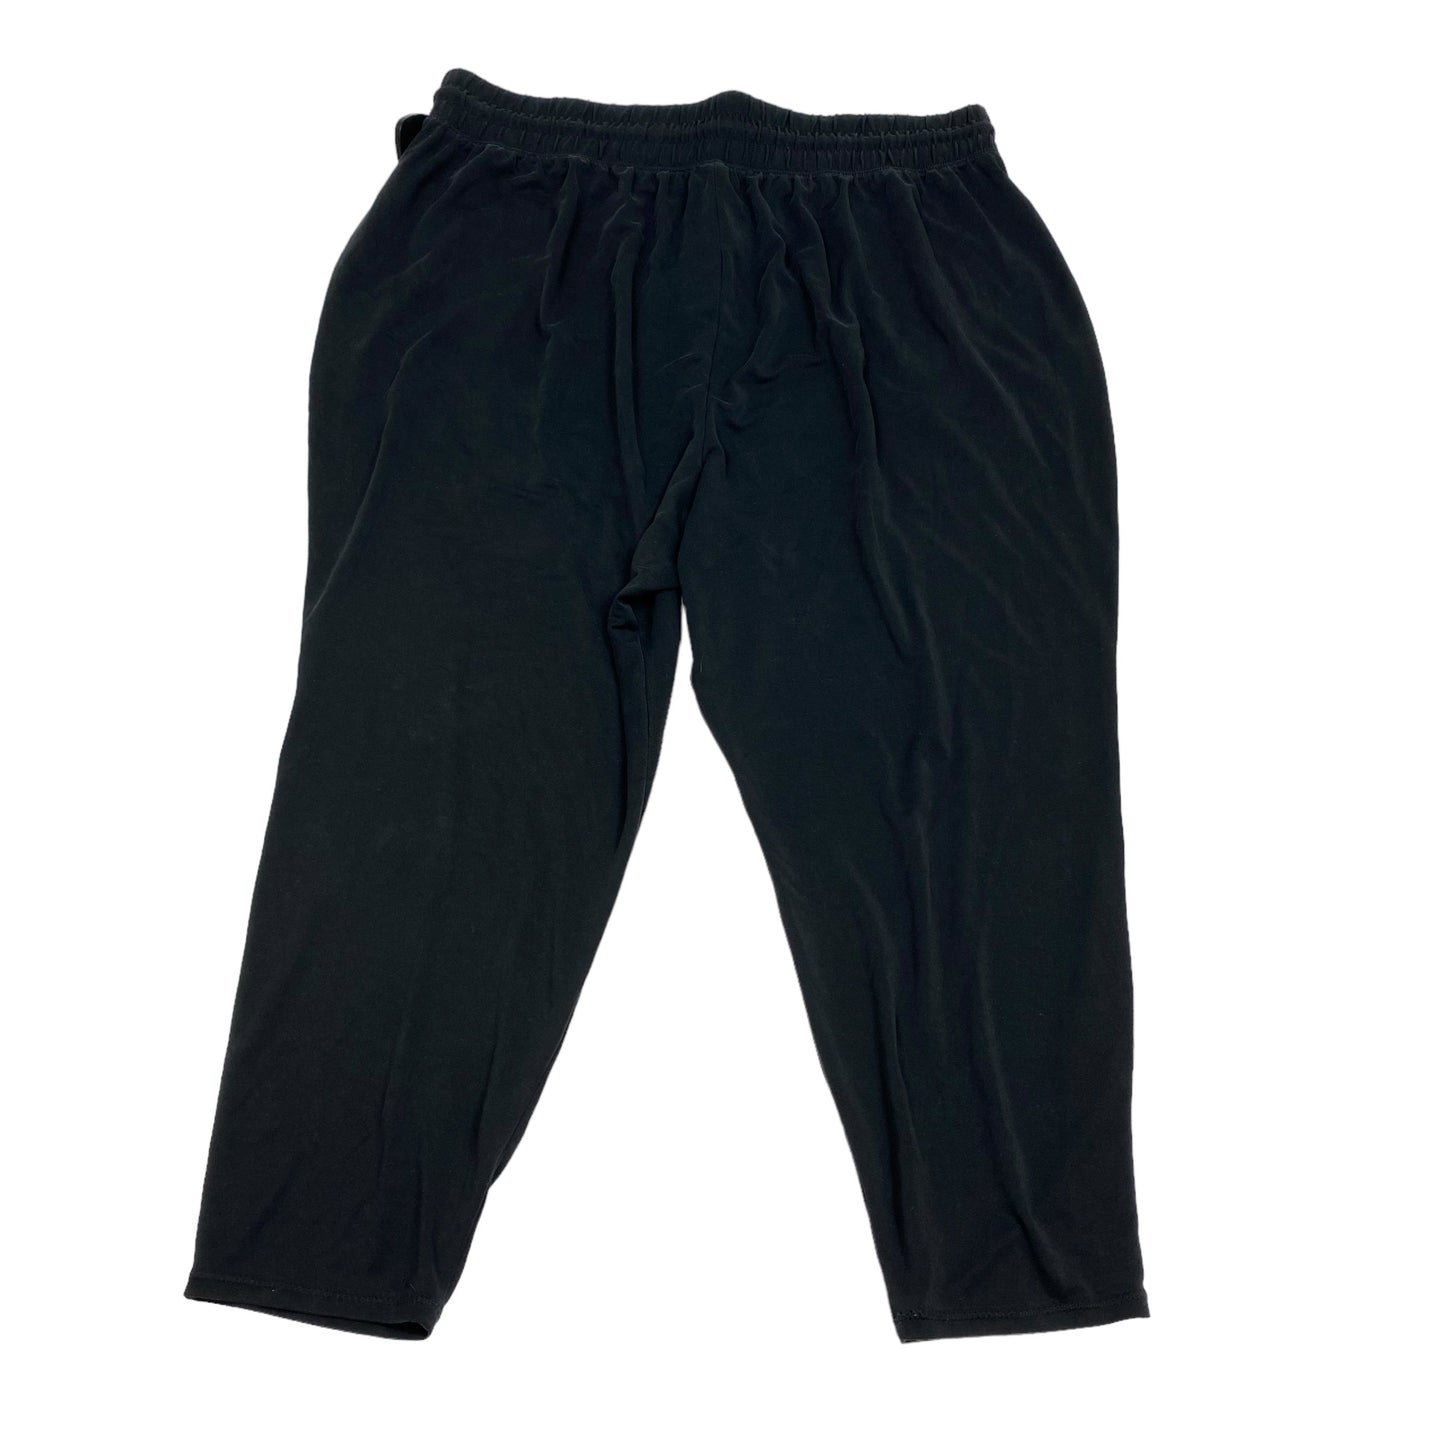 Black Athletic Pants Fabletics, Size 2x